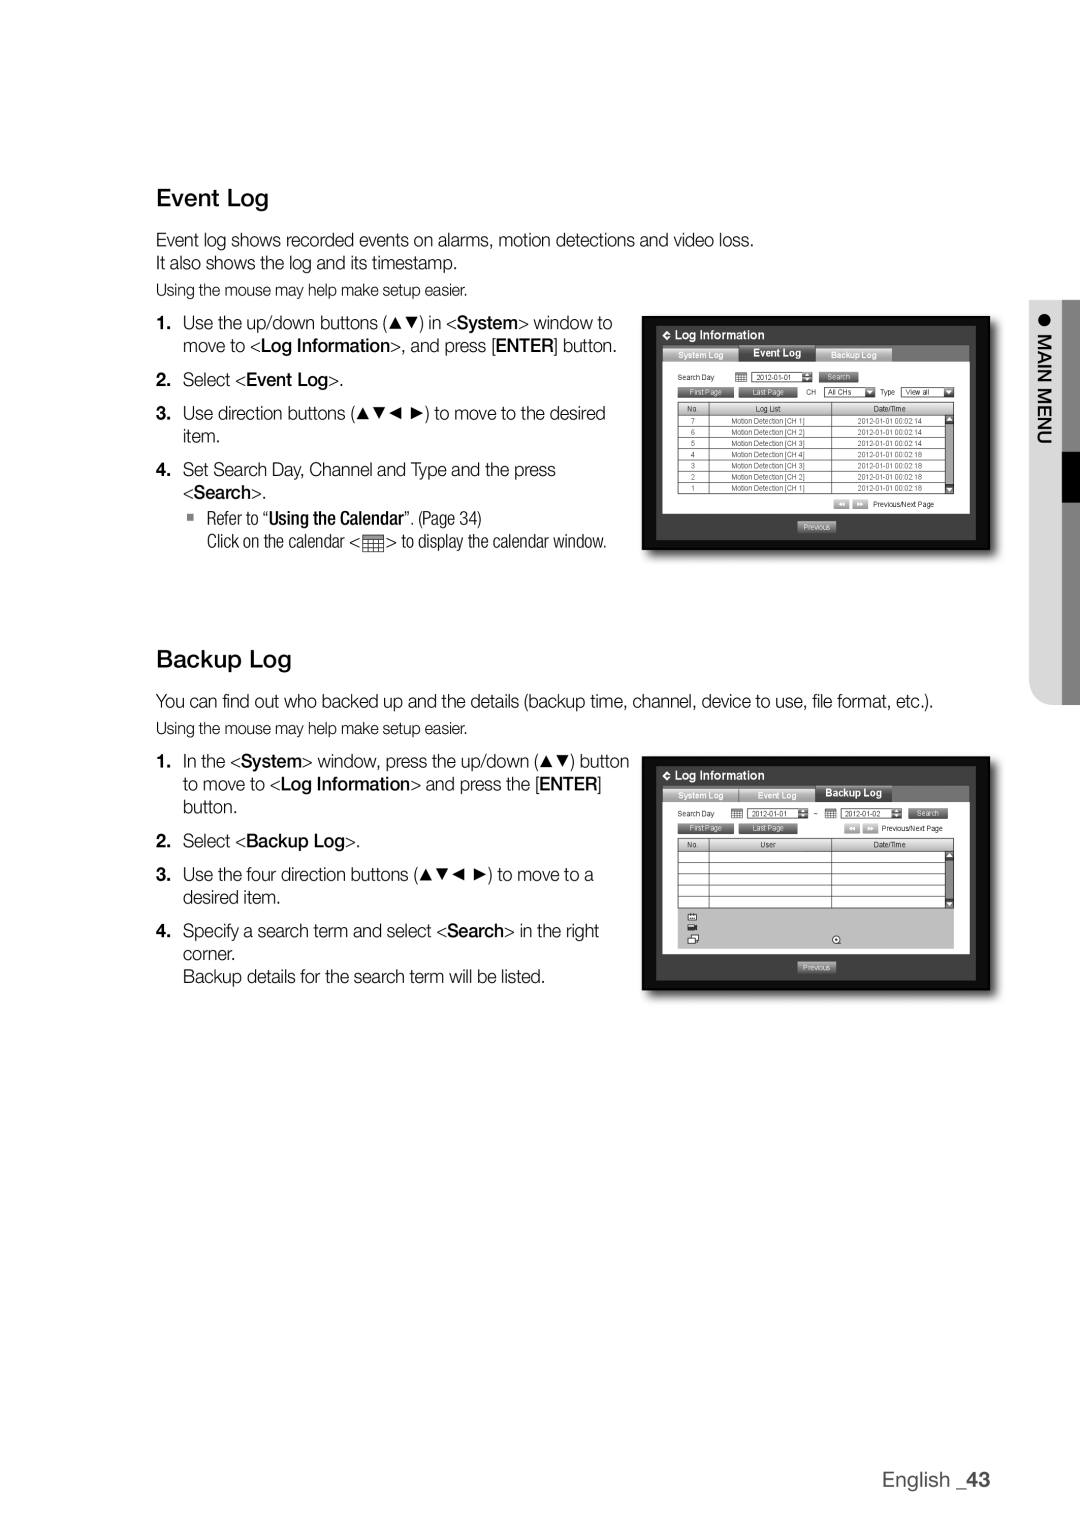 Samsung SDR3100 user manual event Log, Backup Log, English _43 